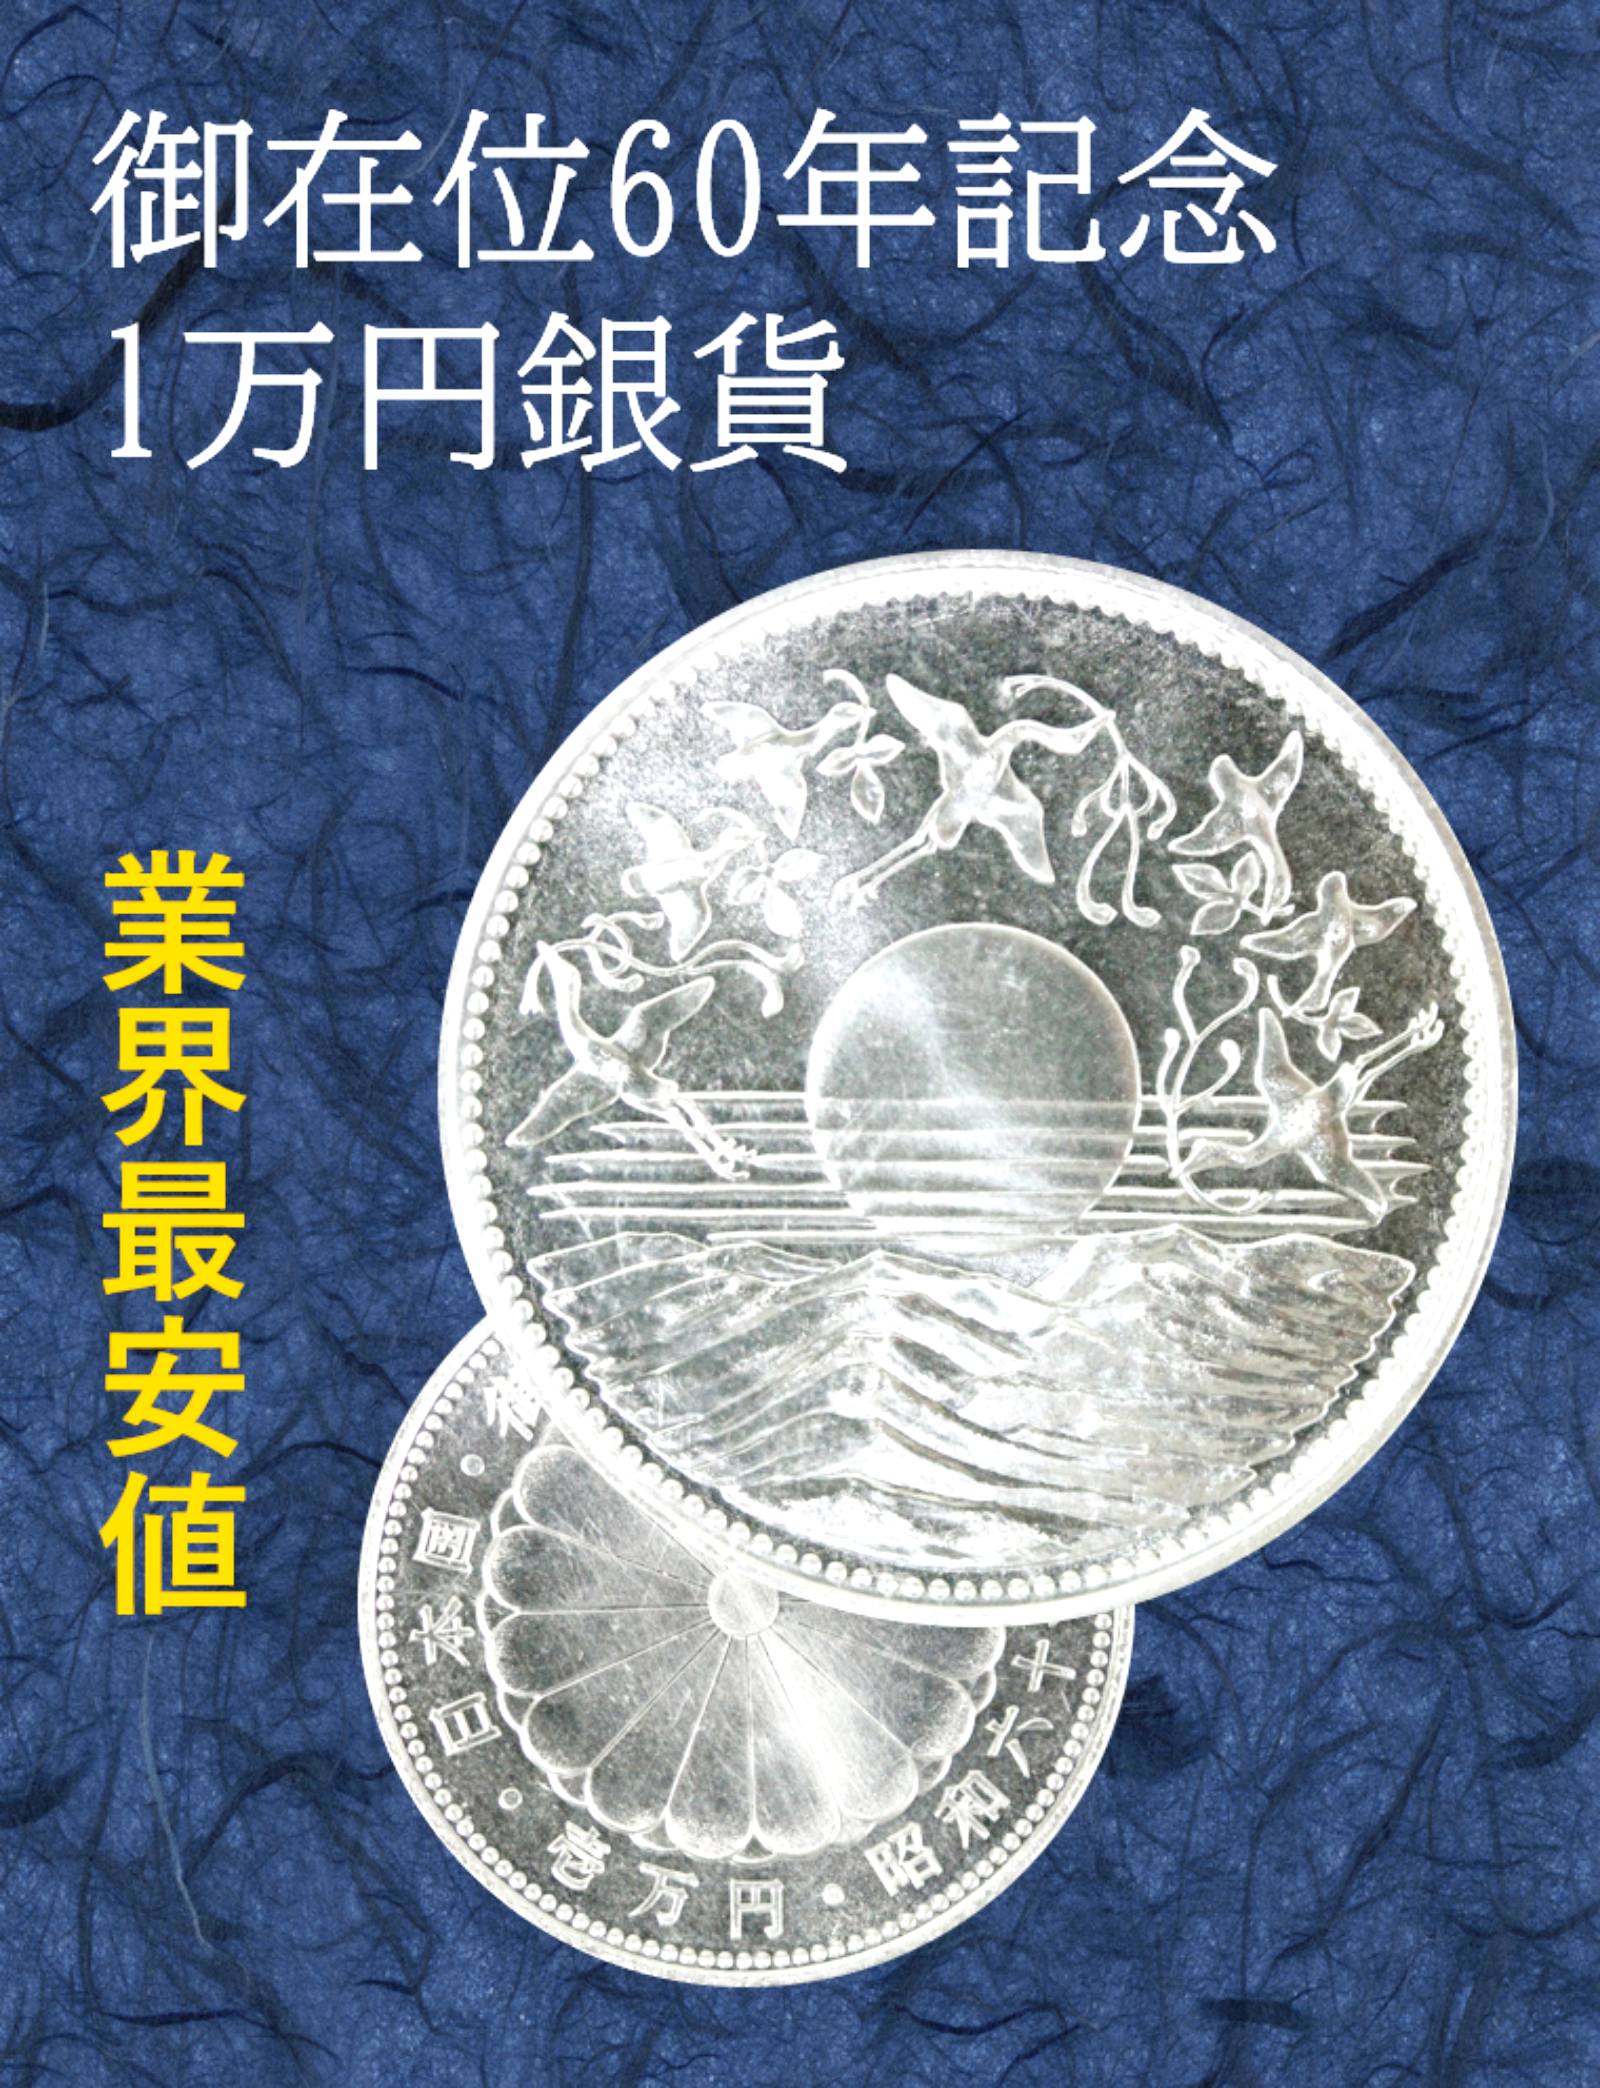 昭和天皇御在位60年記念10000円銀貨 ブリスターパック入り 昭和61年